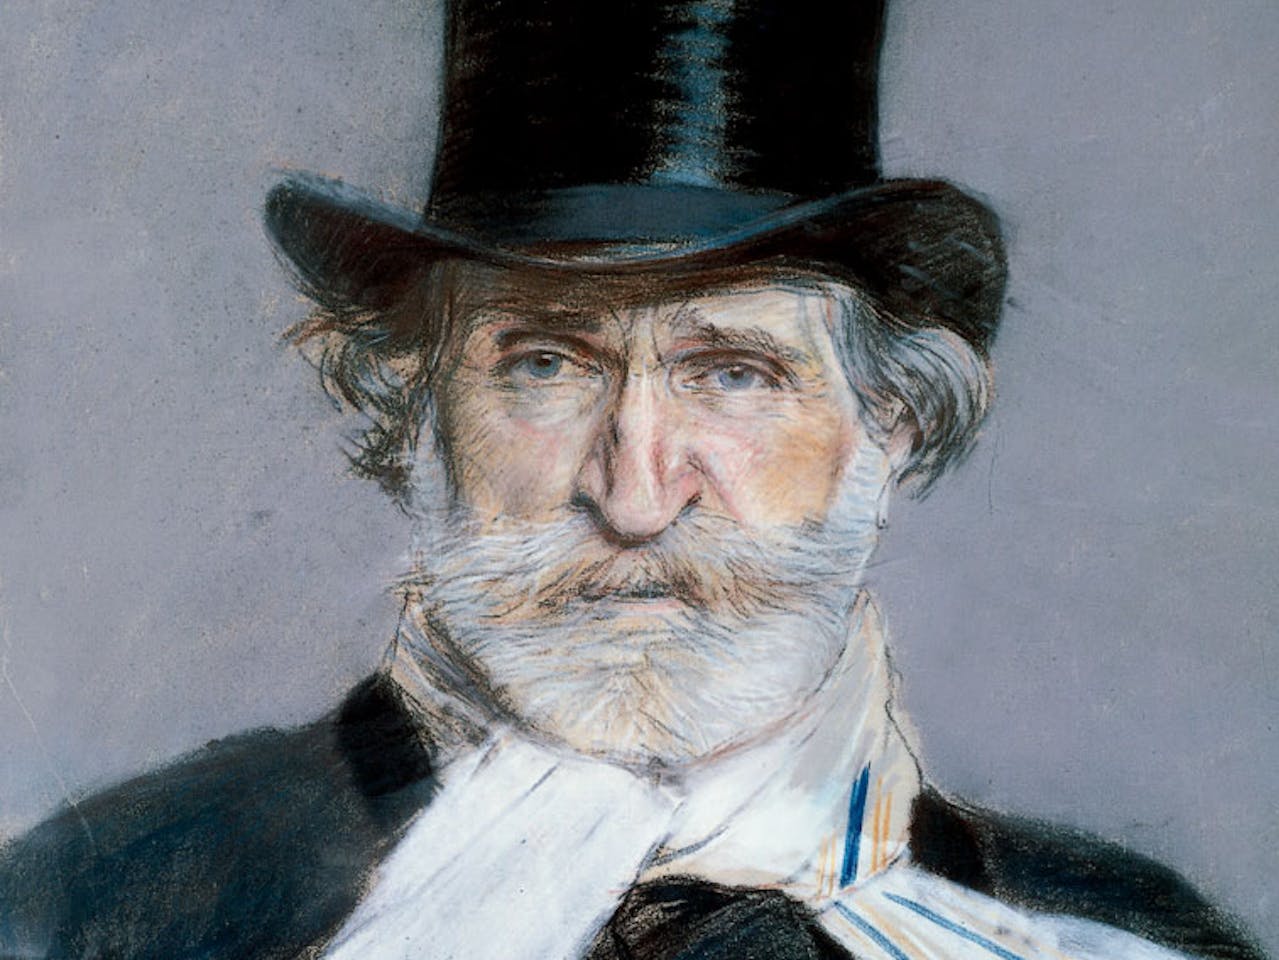 A drawn portrait of composer Verdi by Giovanni Boldini.